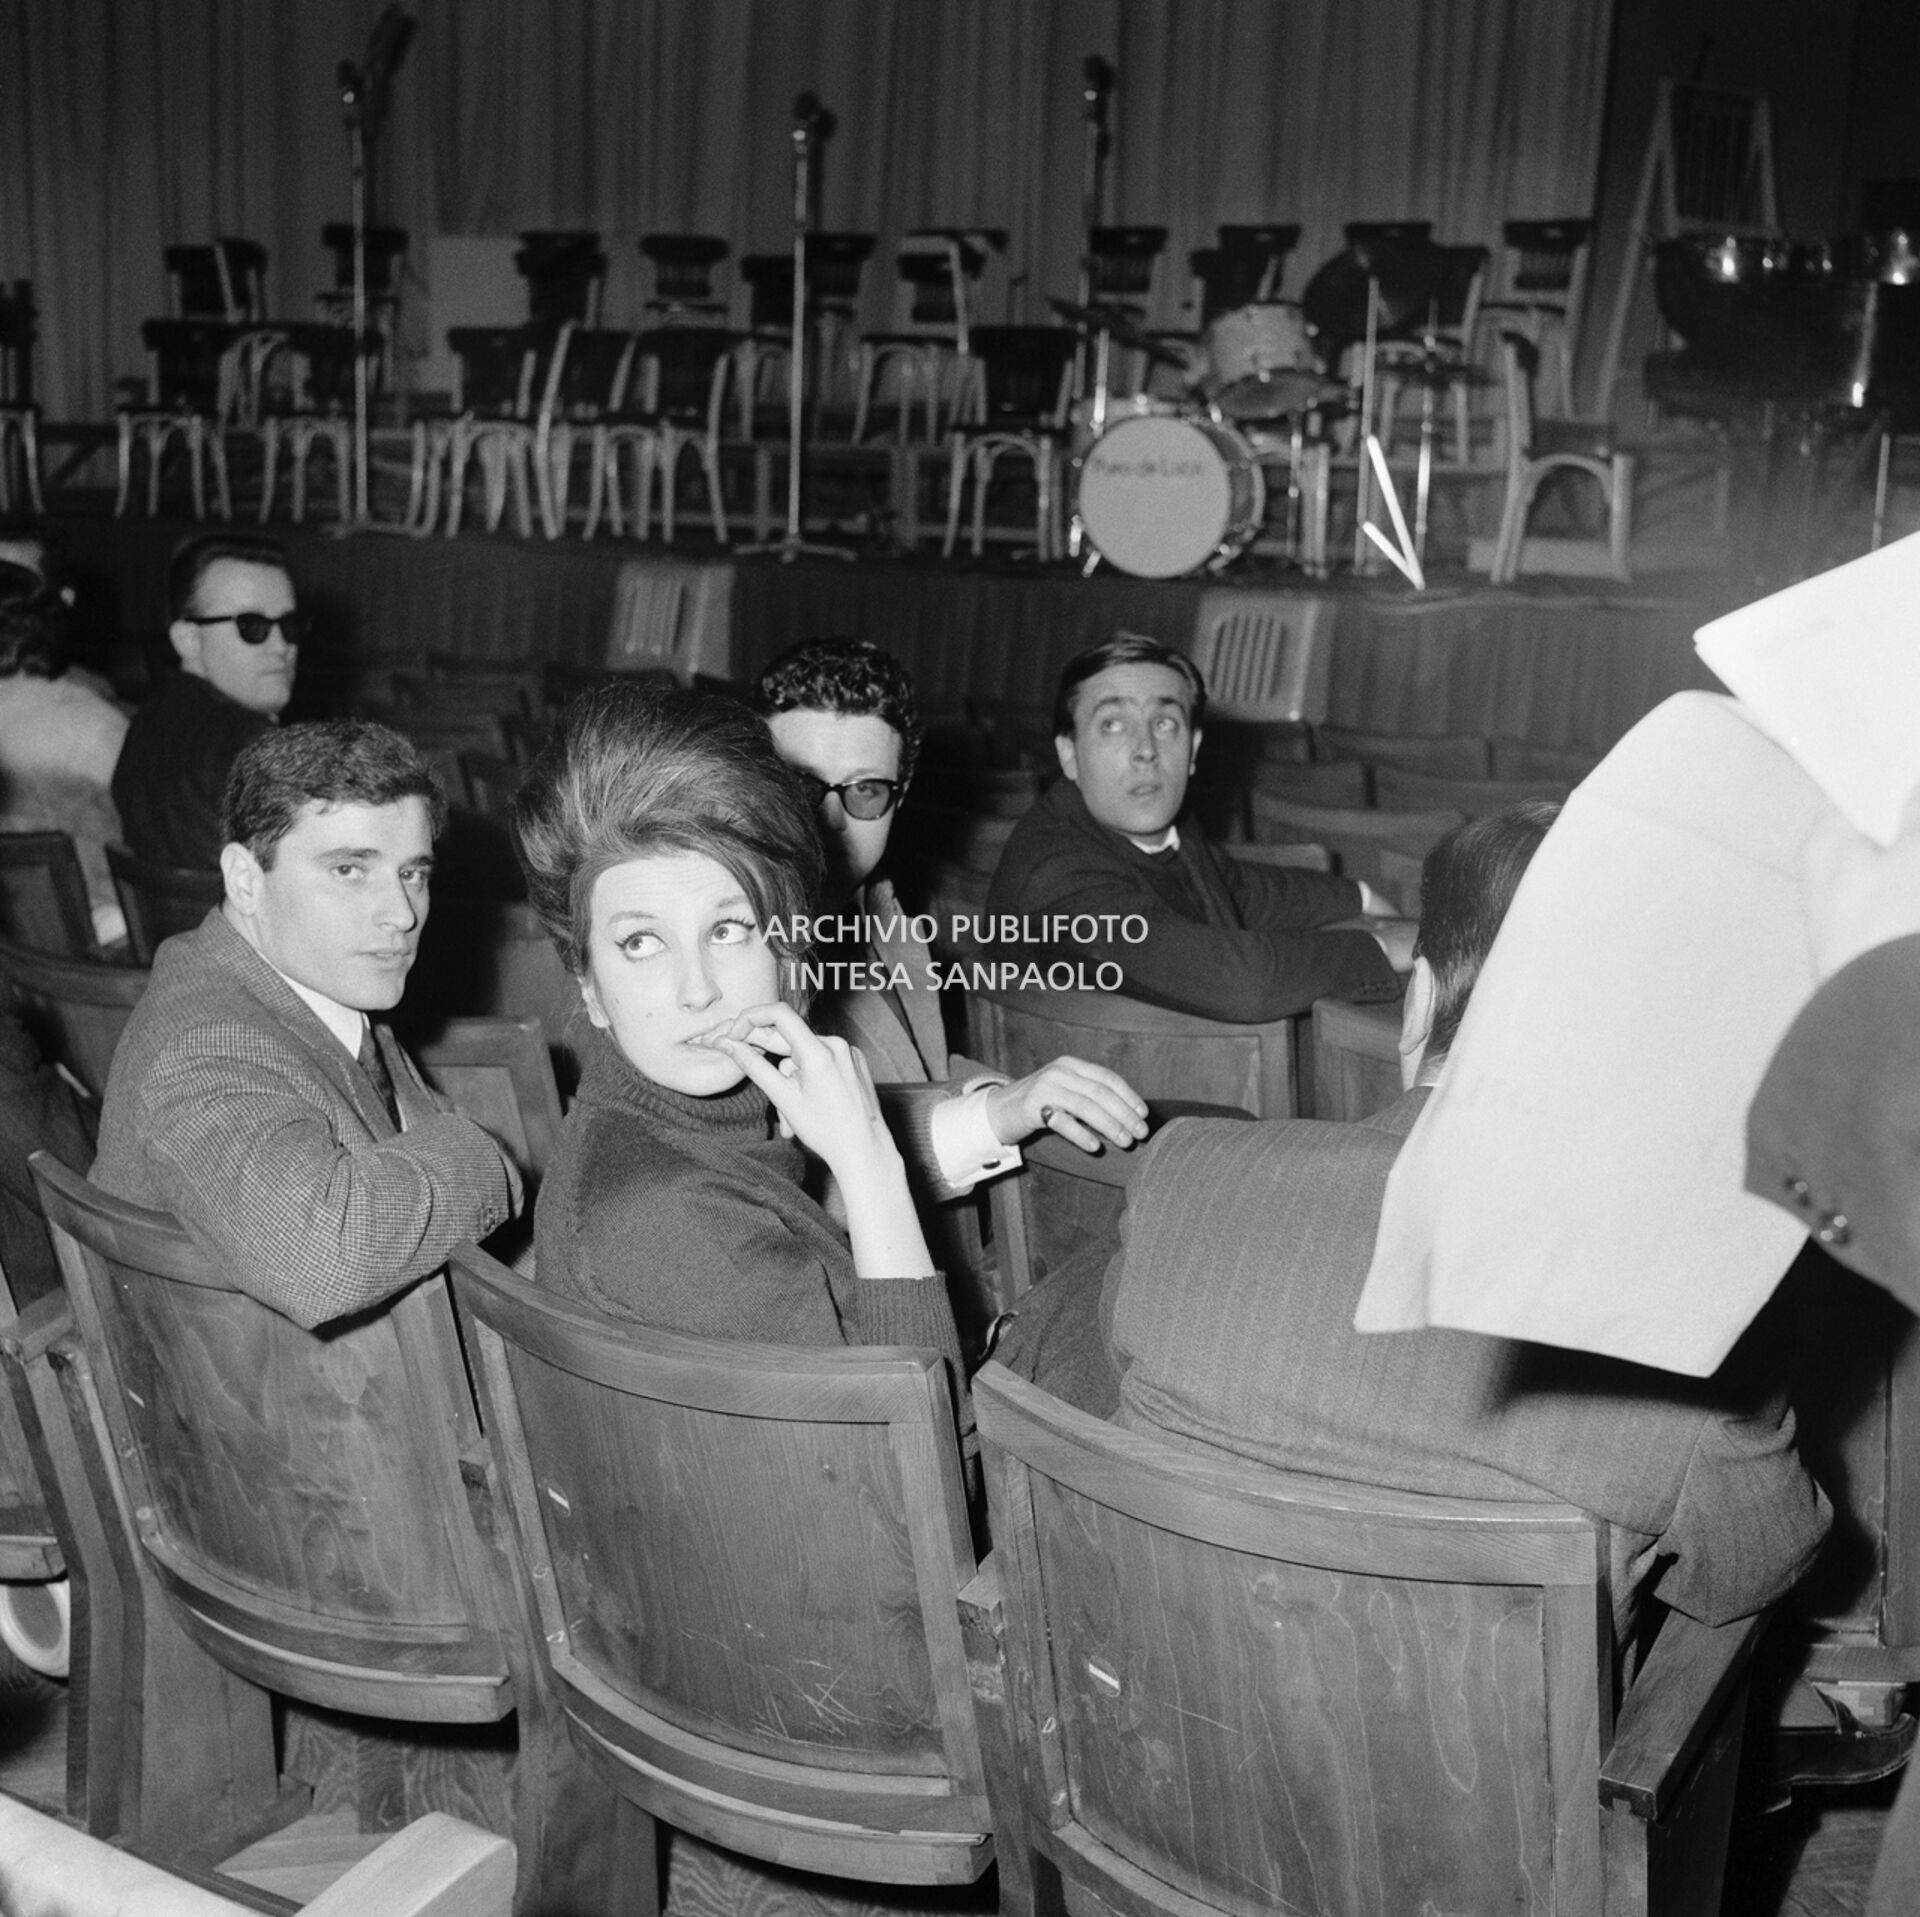 Mina, seduta in platea, durante le prove al Festival di Sanremo